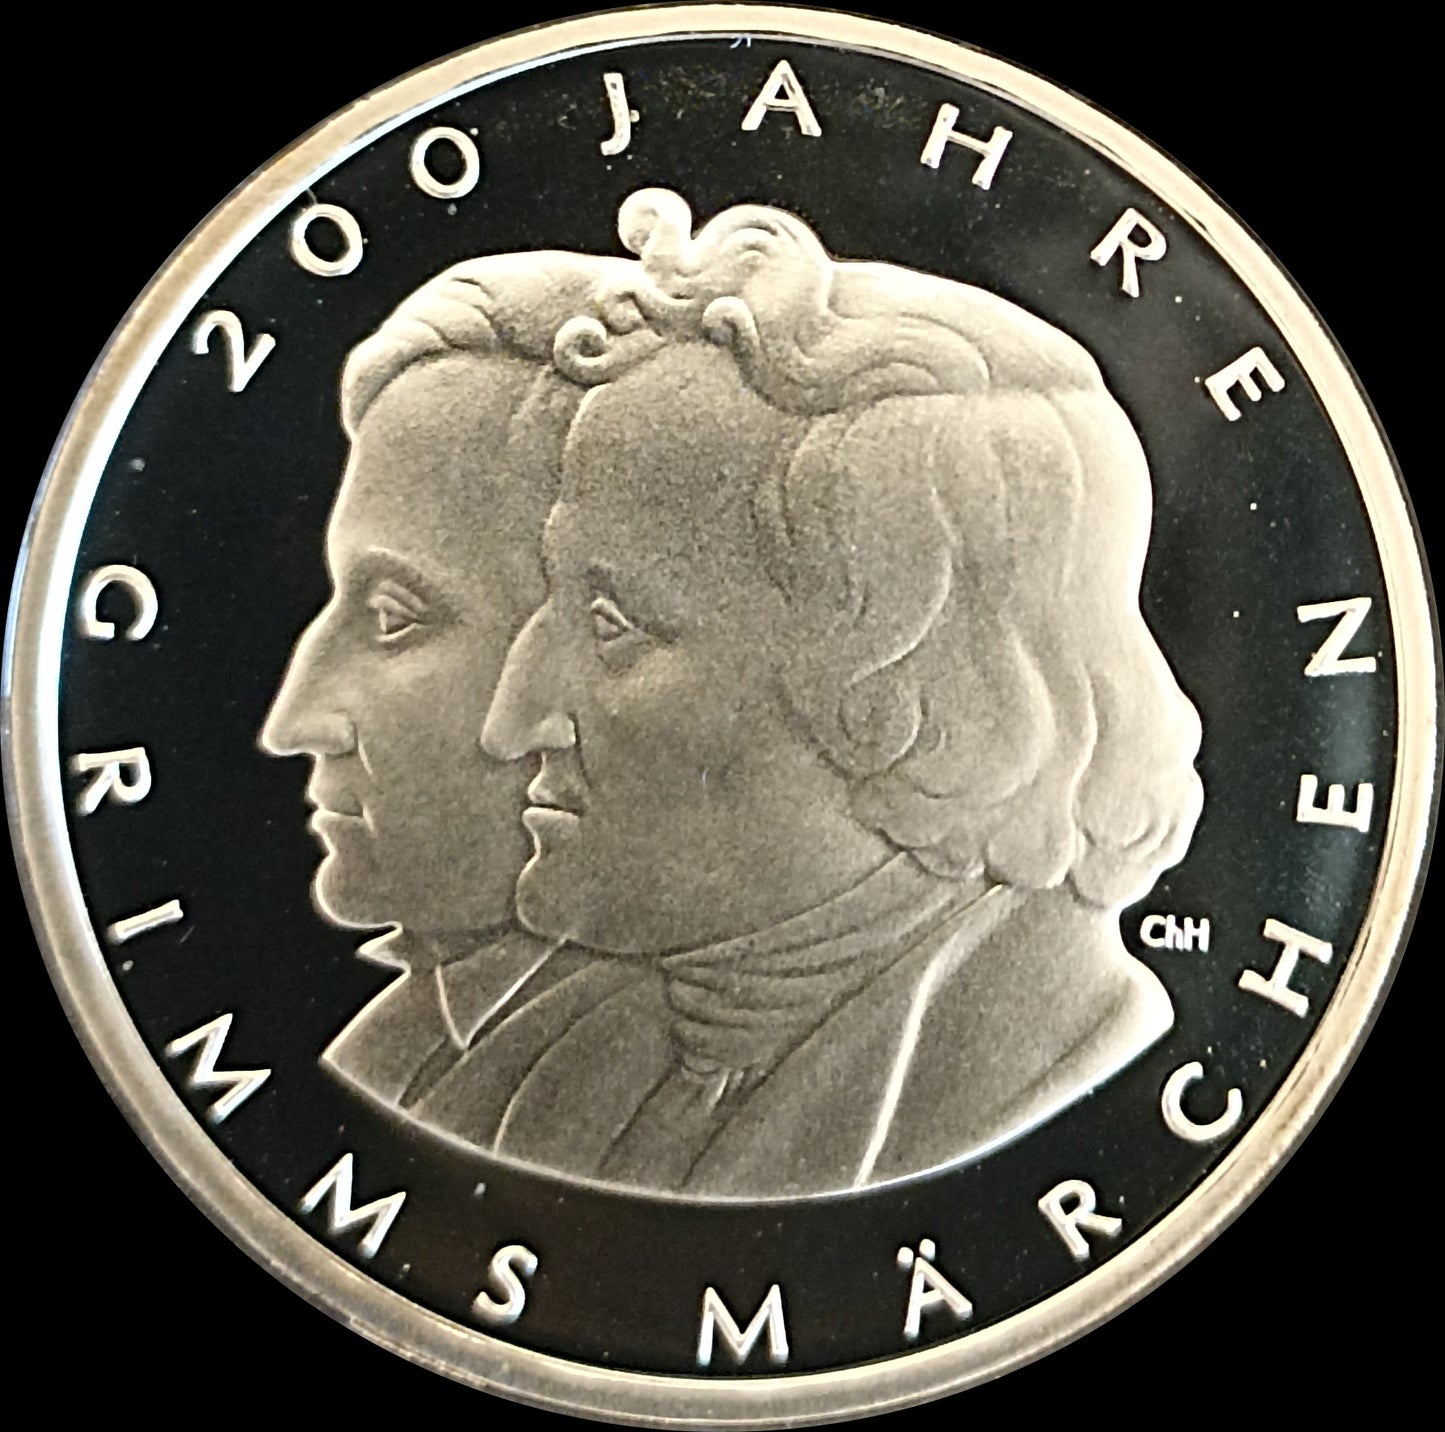 200 JAHRE GRIMMS MÄRCHEN, Serie 10 € Silber Gedenkmünzen Deutschland, Spiegelglanz, 2012